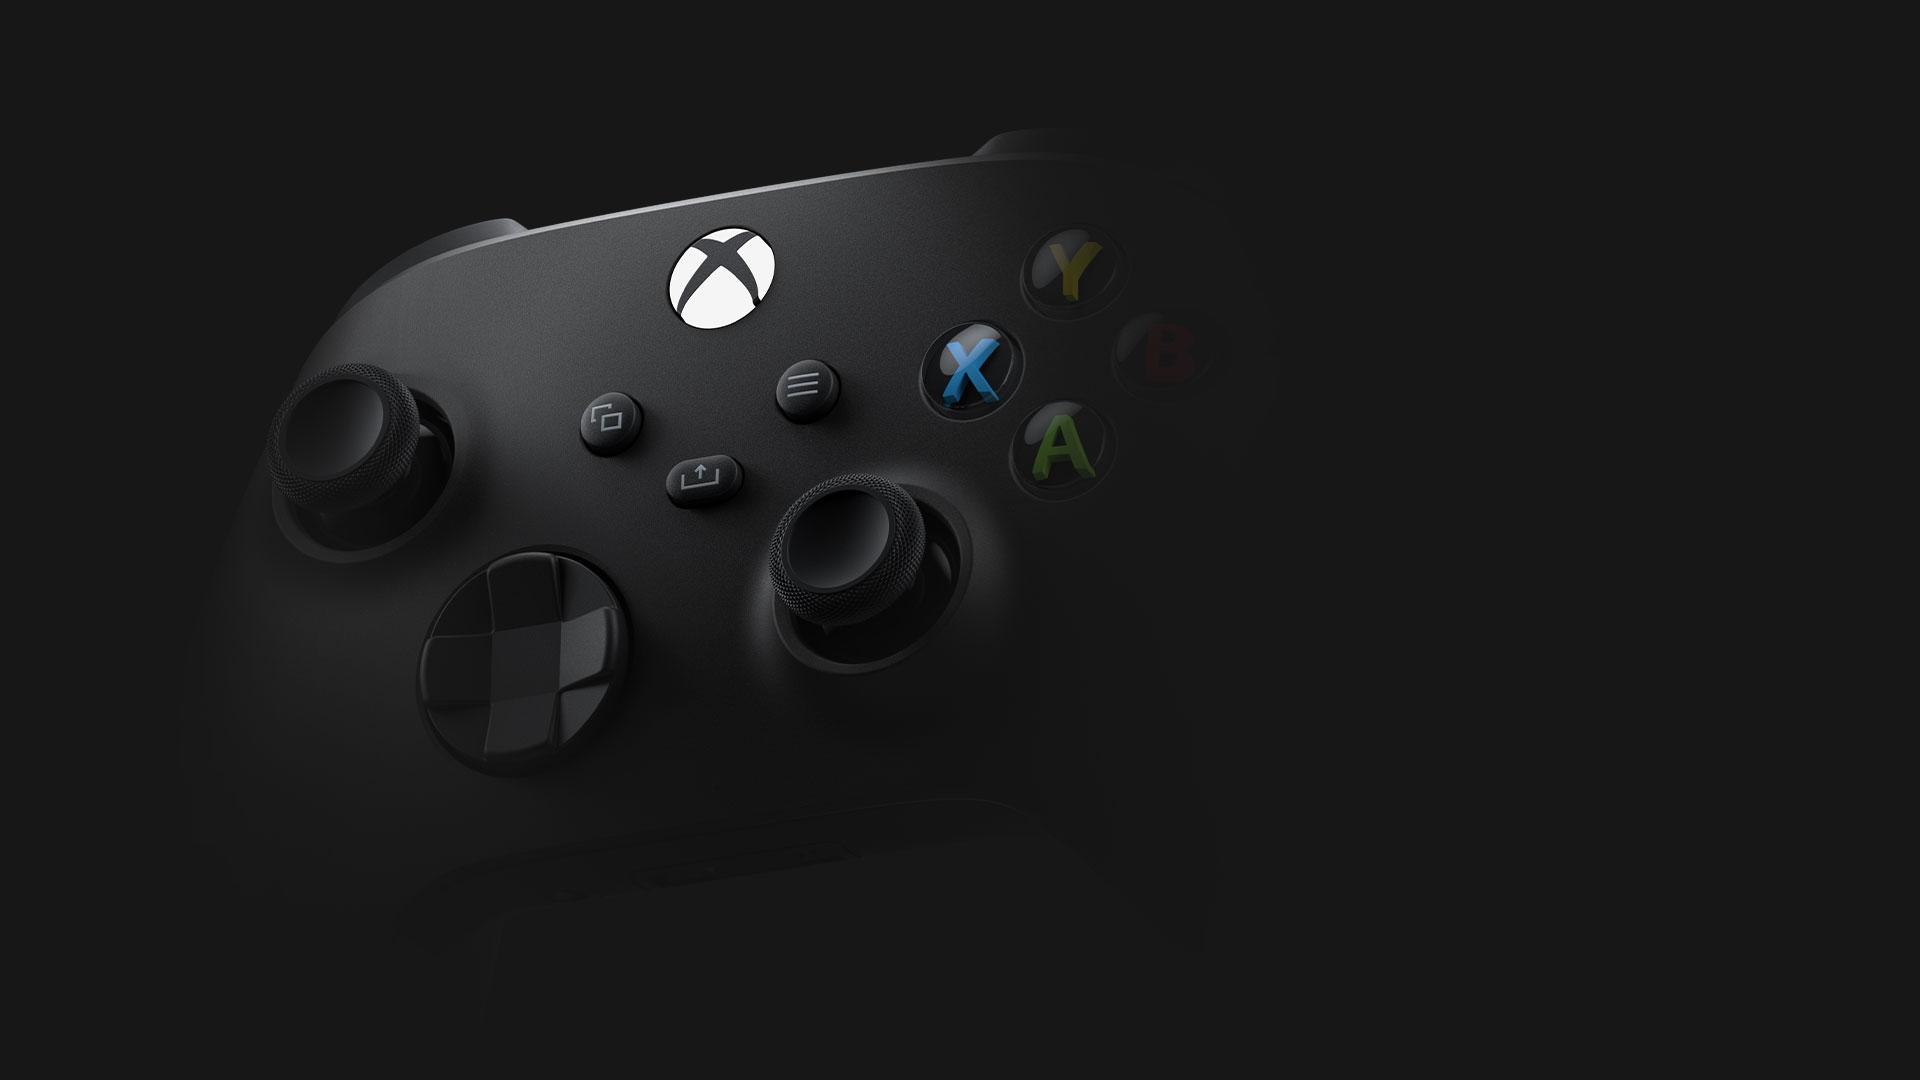 Xbox ワイヤレス コントローラー (カーボン ブラック) の正面